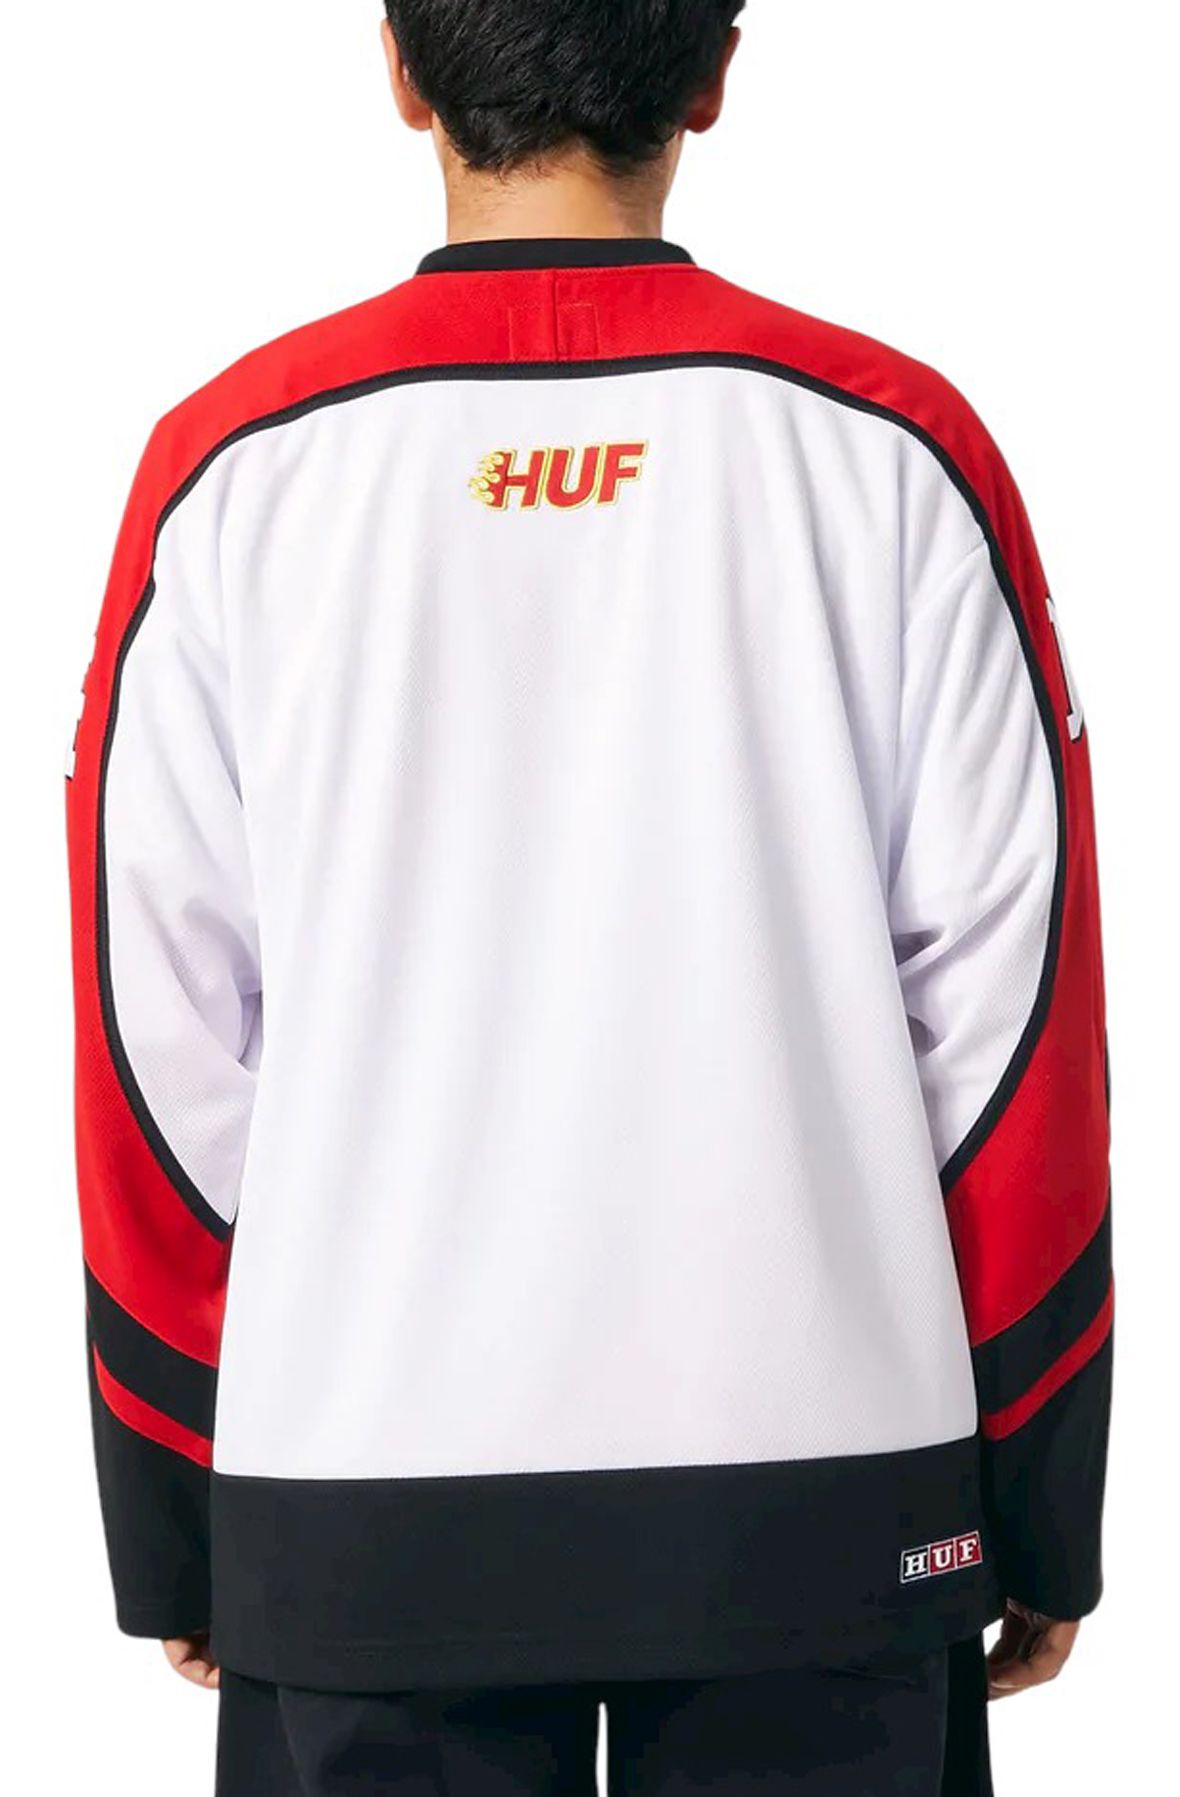  HUF Enforcer Hockey Jersey for Men, White, Small